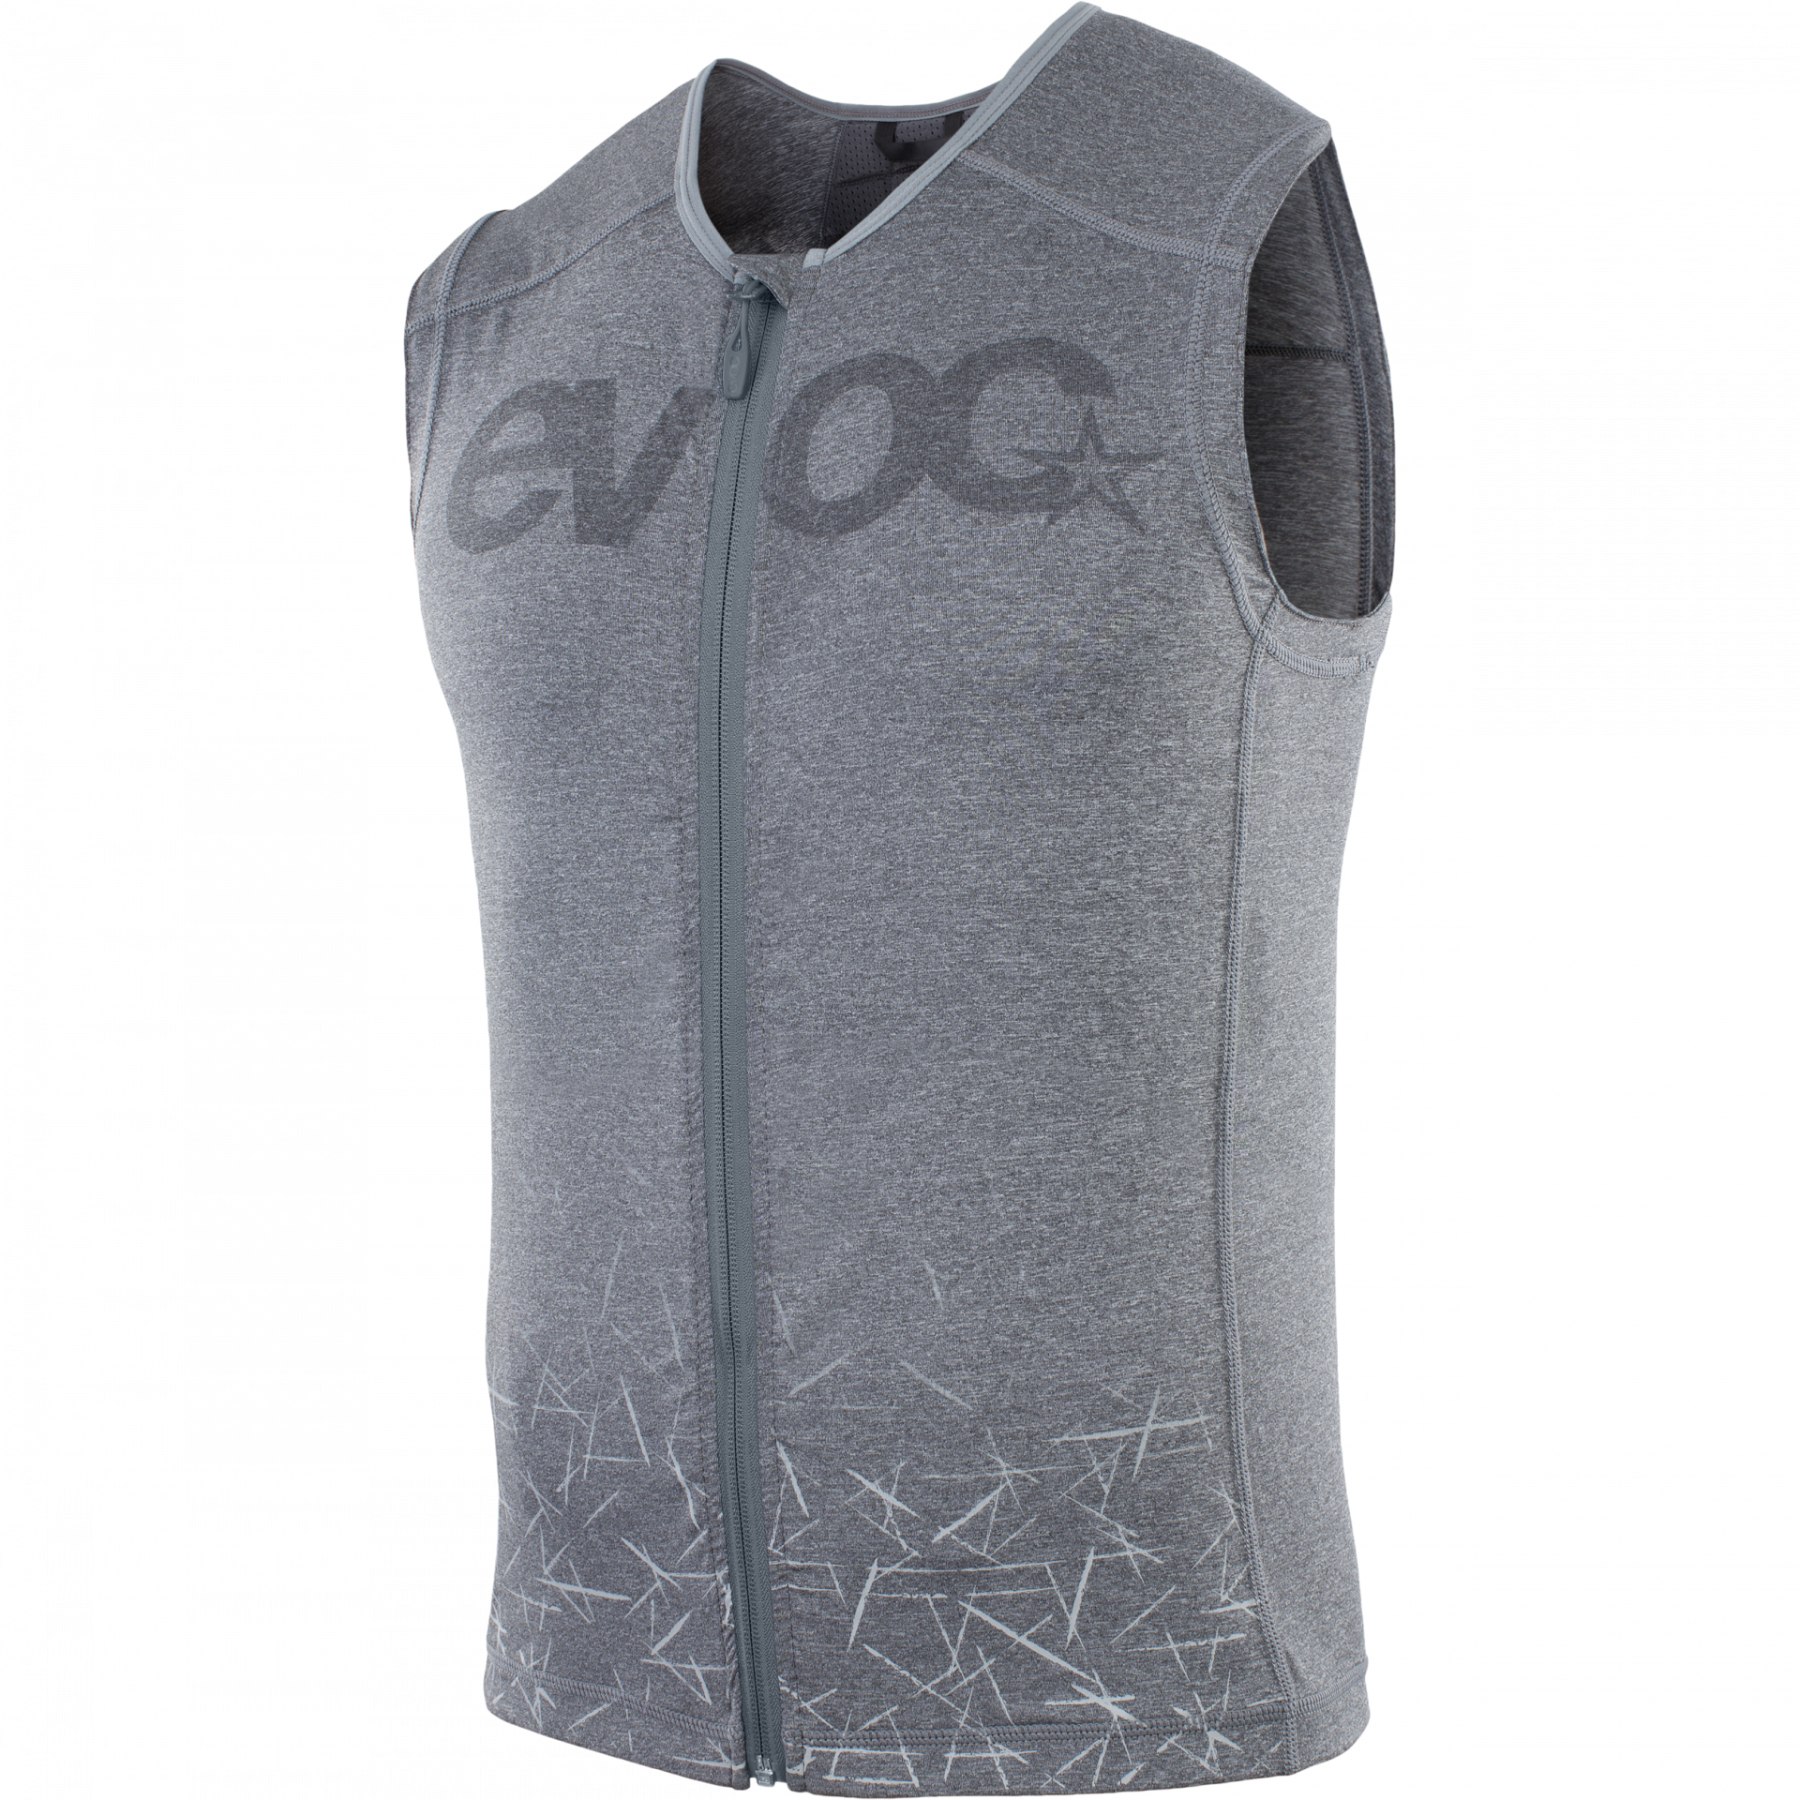 Produktbild von EVOC Protector Vest Männer Protektorenweste - Carbon Grey